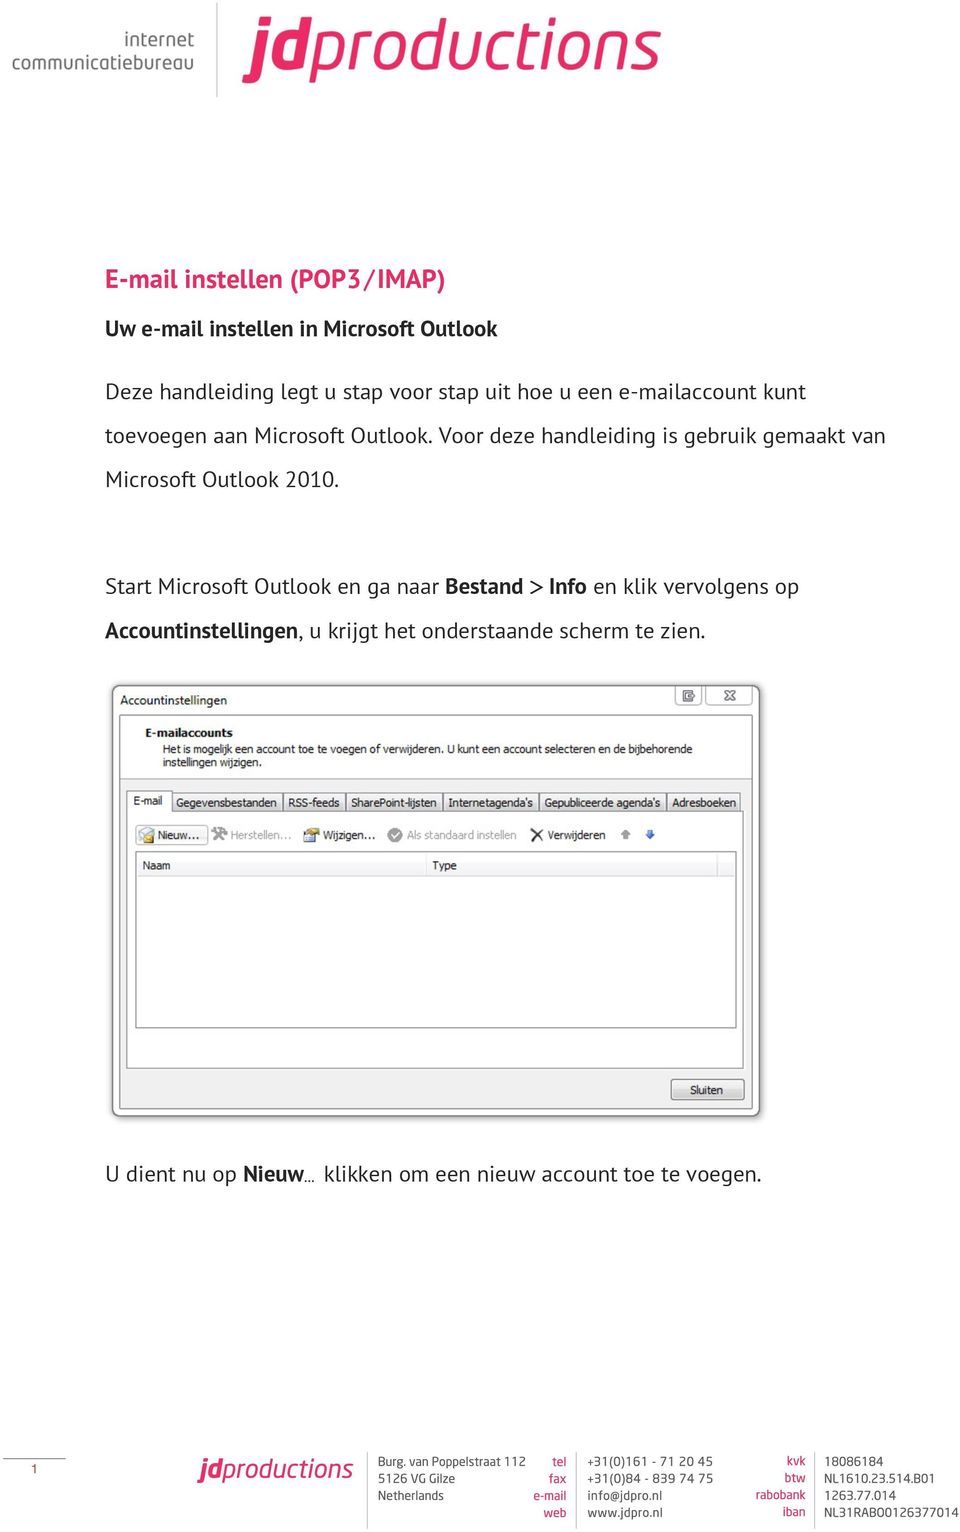 Voor deze handleiding is gebruik gemaakt van Microsoft Outlook 2010.